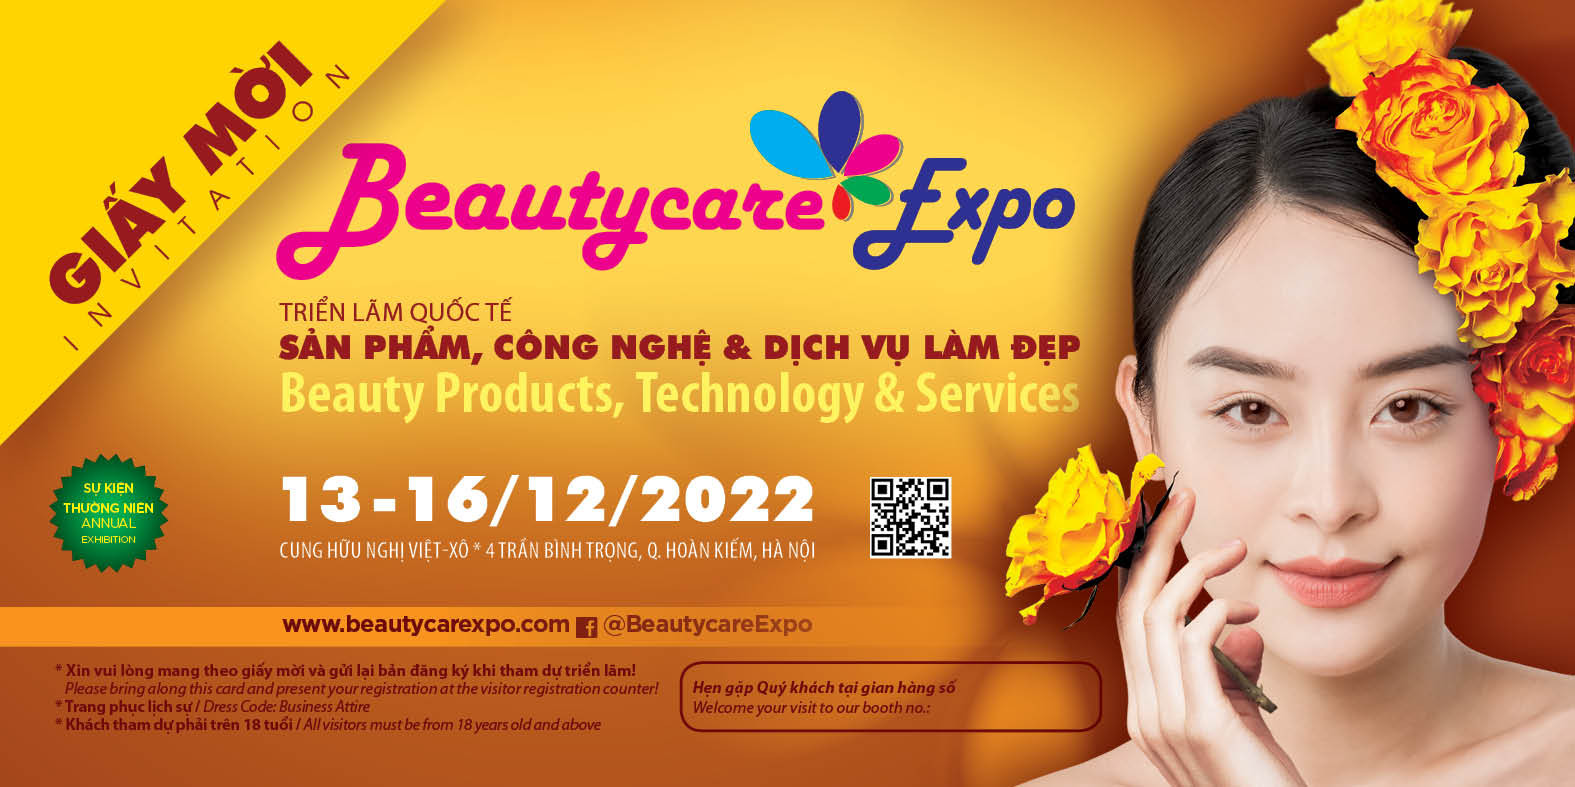 Beautycare Expo 2022 – Triển lãm quốc tế, sản phẩm công nghệ & dịch vụ làm đẹp sắp diễn ra tại Hà Nội